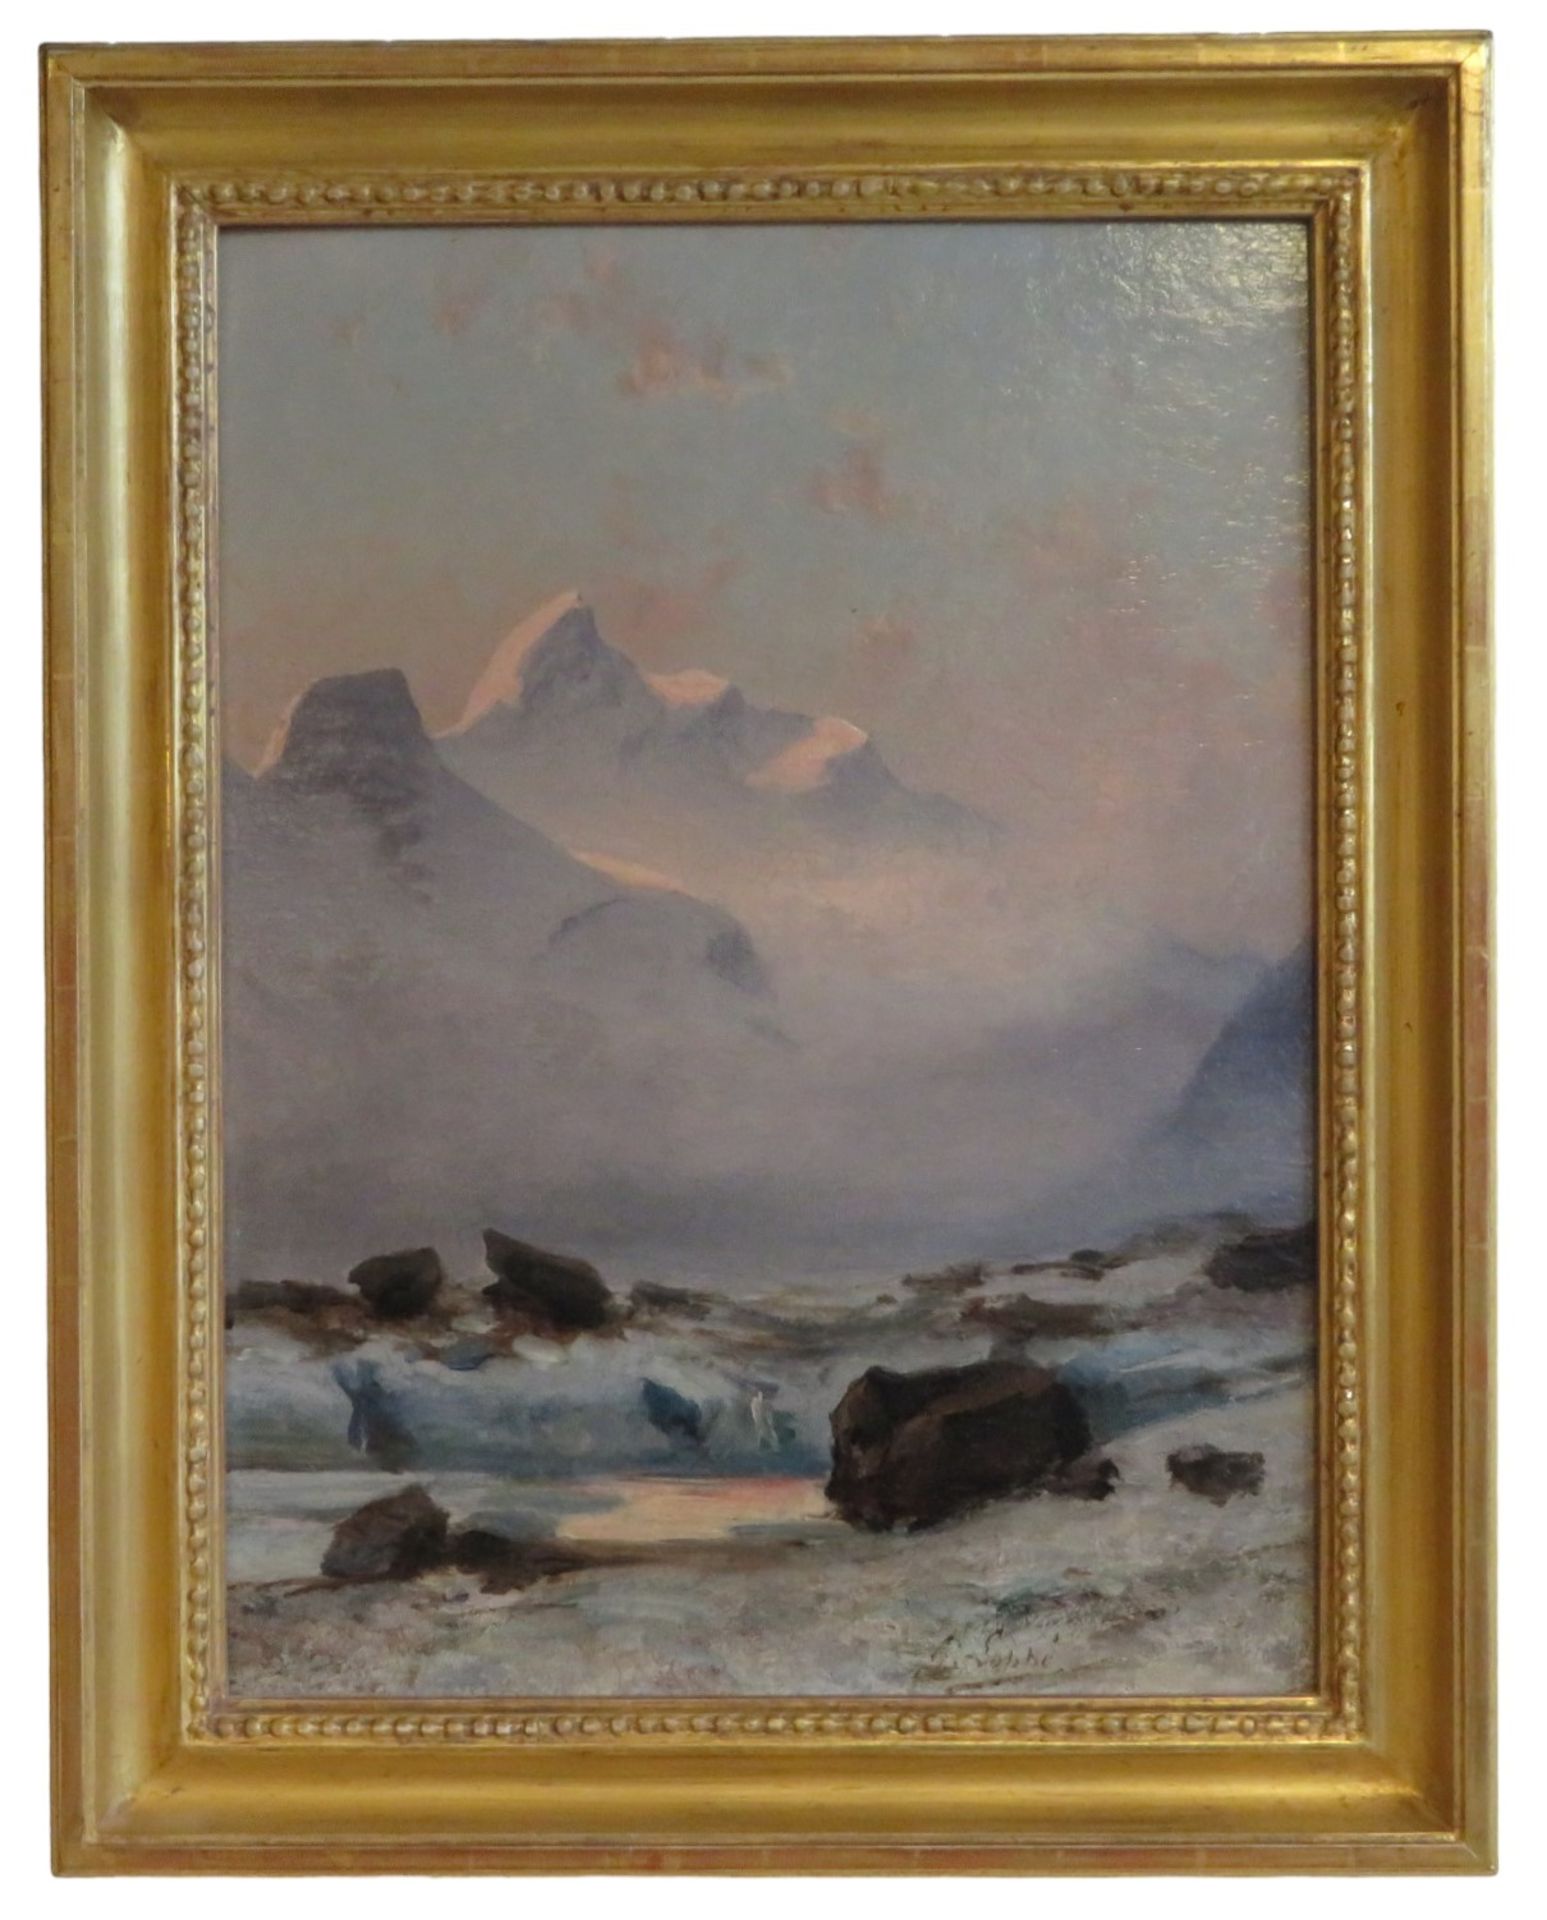 Loppé, Gabriel, 1825 - 1913, Französischer Maler, Fotograf und Bergsteiger, - Bild 4 aus 6